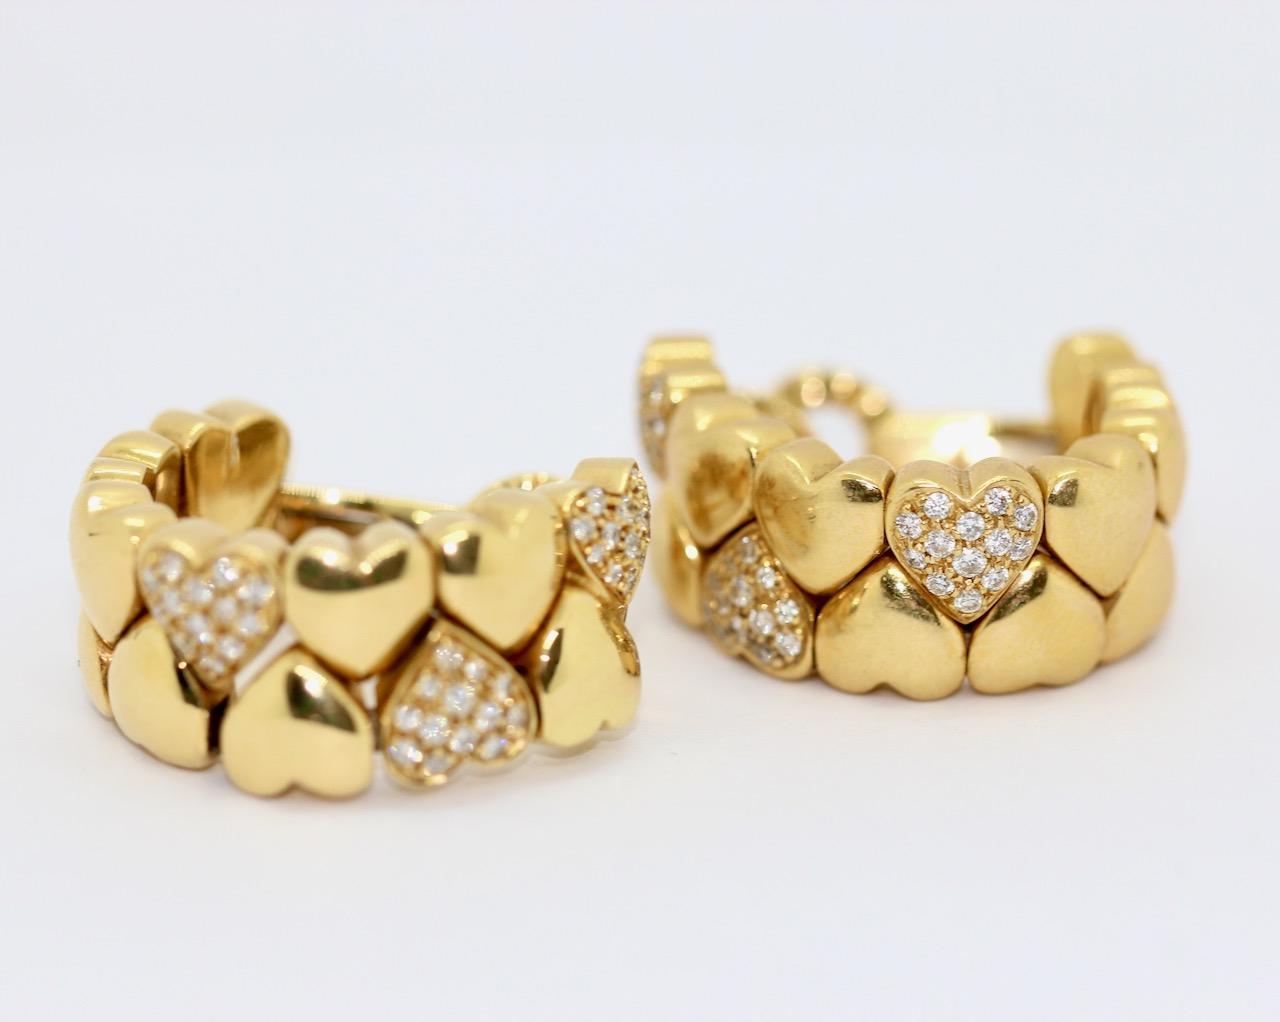 Schöne und seltene Cartier Double Heart Coeur Ohrringe, 18 Karat Gold mit Diamanten. 

Inklusive Original Cartier Echtheitszertifikat und Box.

Aus der gleichen Collection'S bieten wir auch den passenden Bandring an.